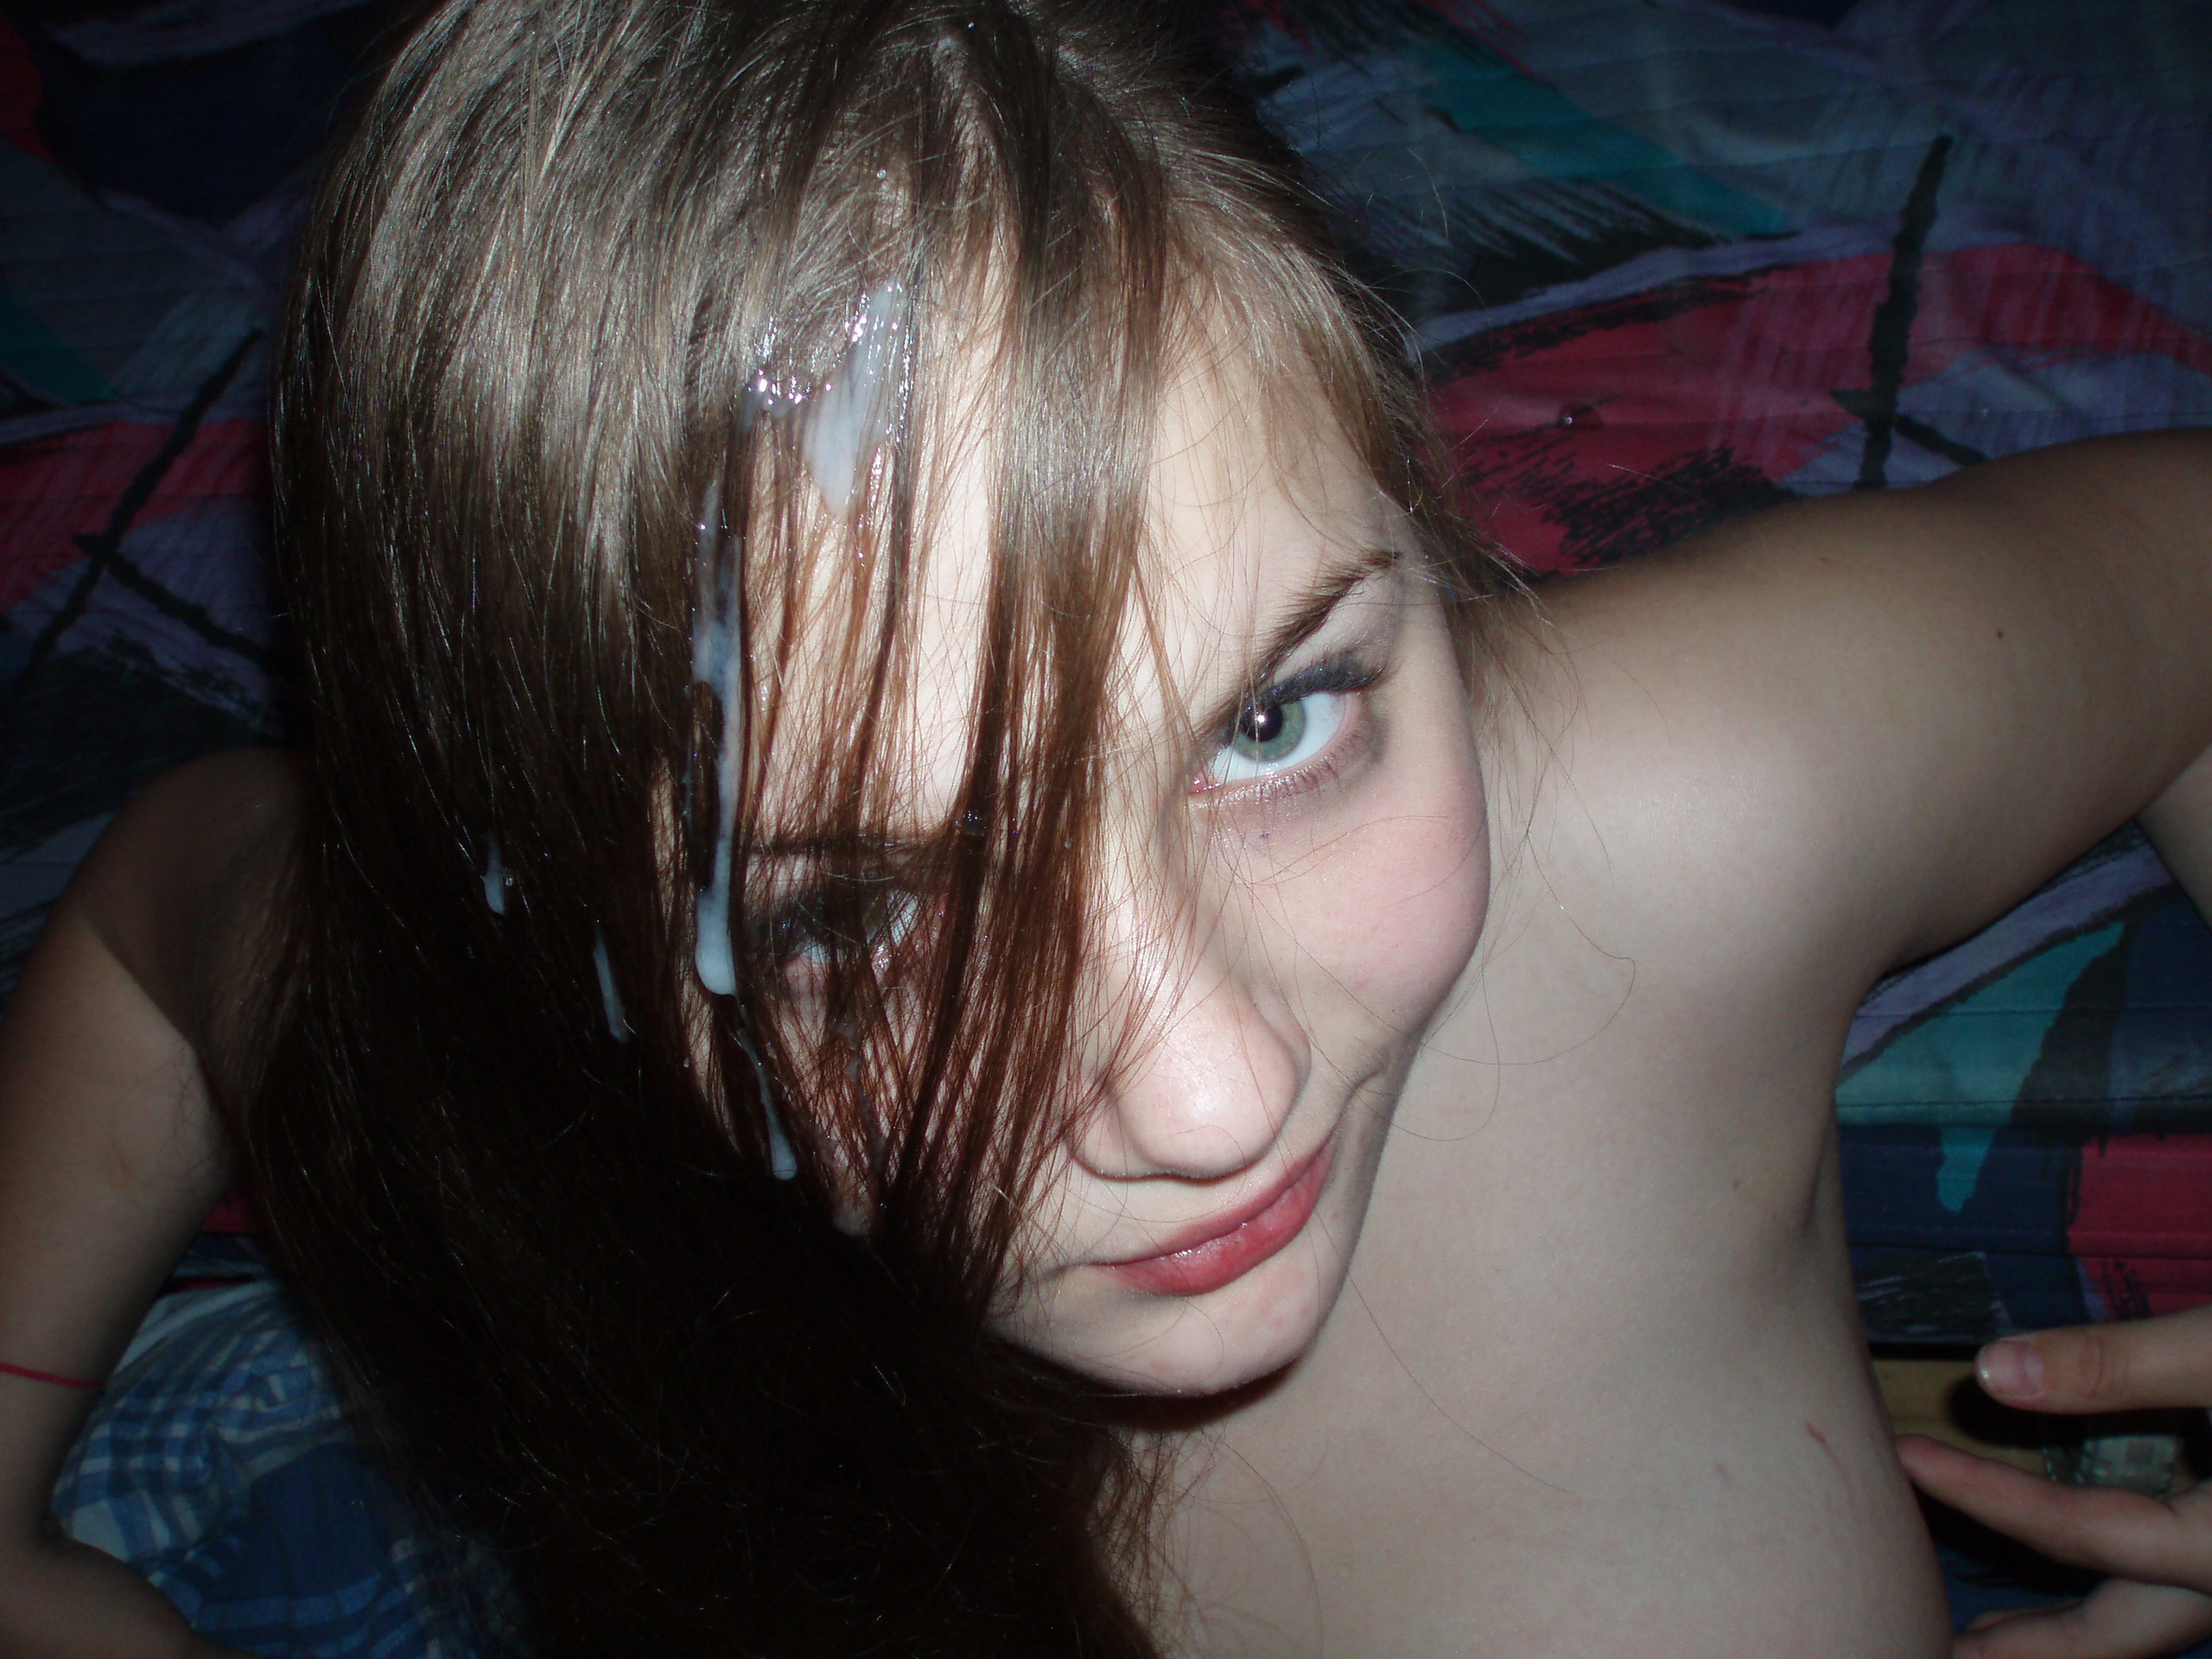 stunning teen amateur brunette shows off her shaved pussy #young #cute #teen #brunette #cum #cuminhair #eyecontact #pov